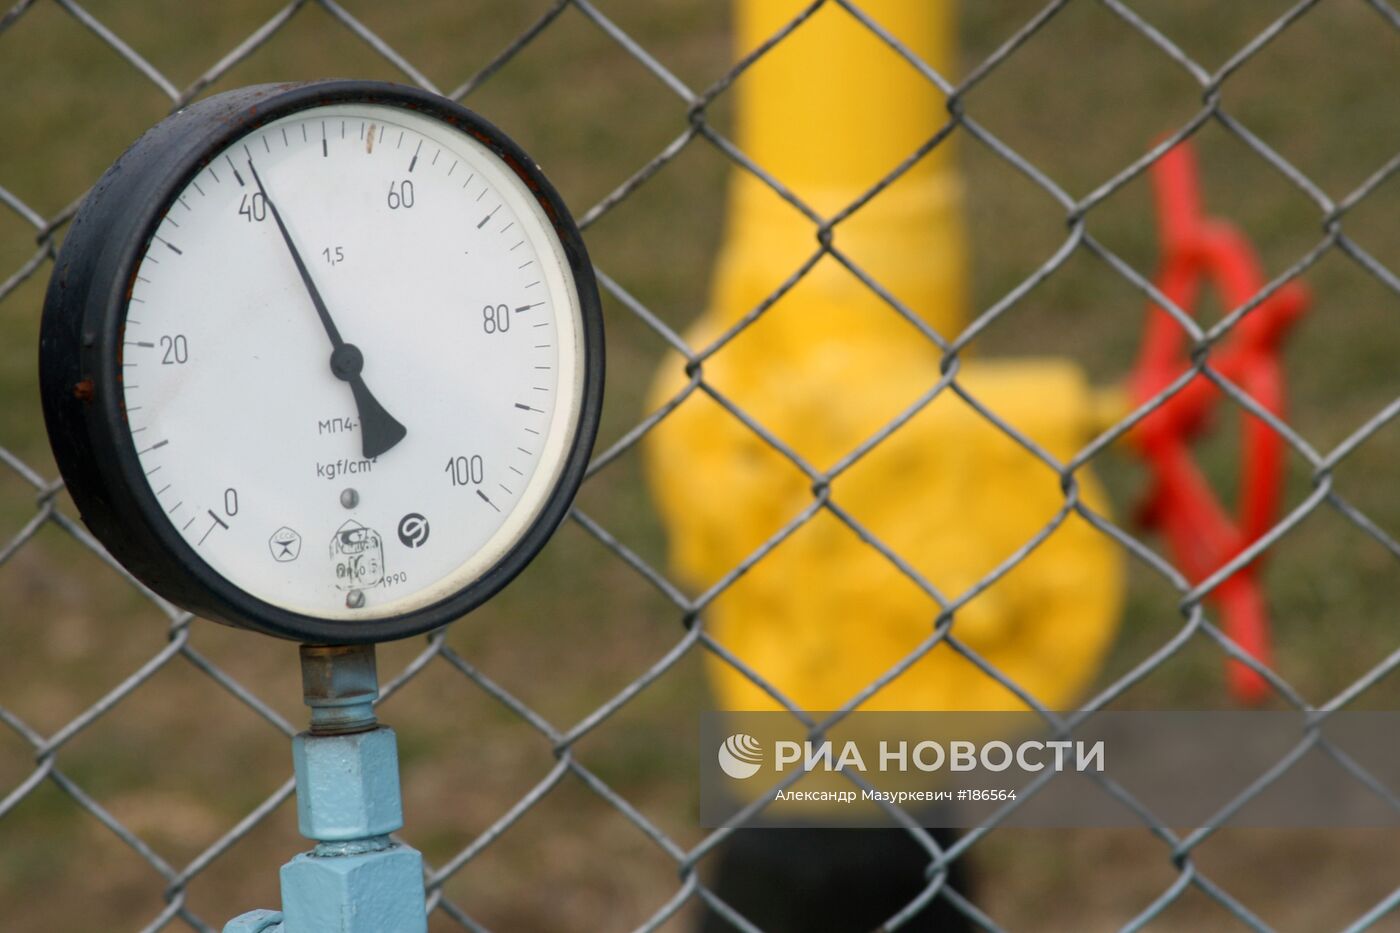 Газовая компрессорная станция "Укртрансгаз" 